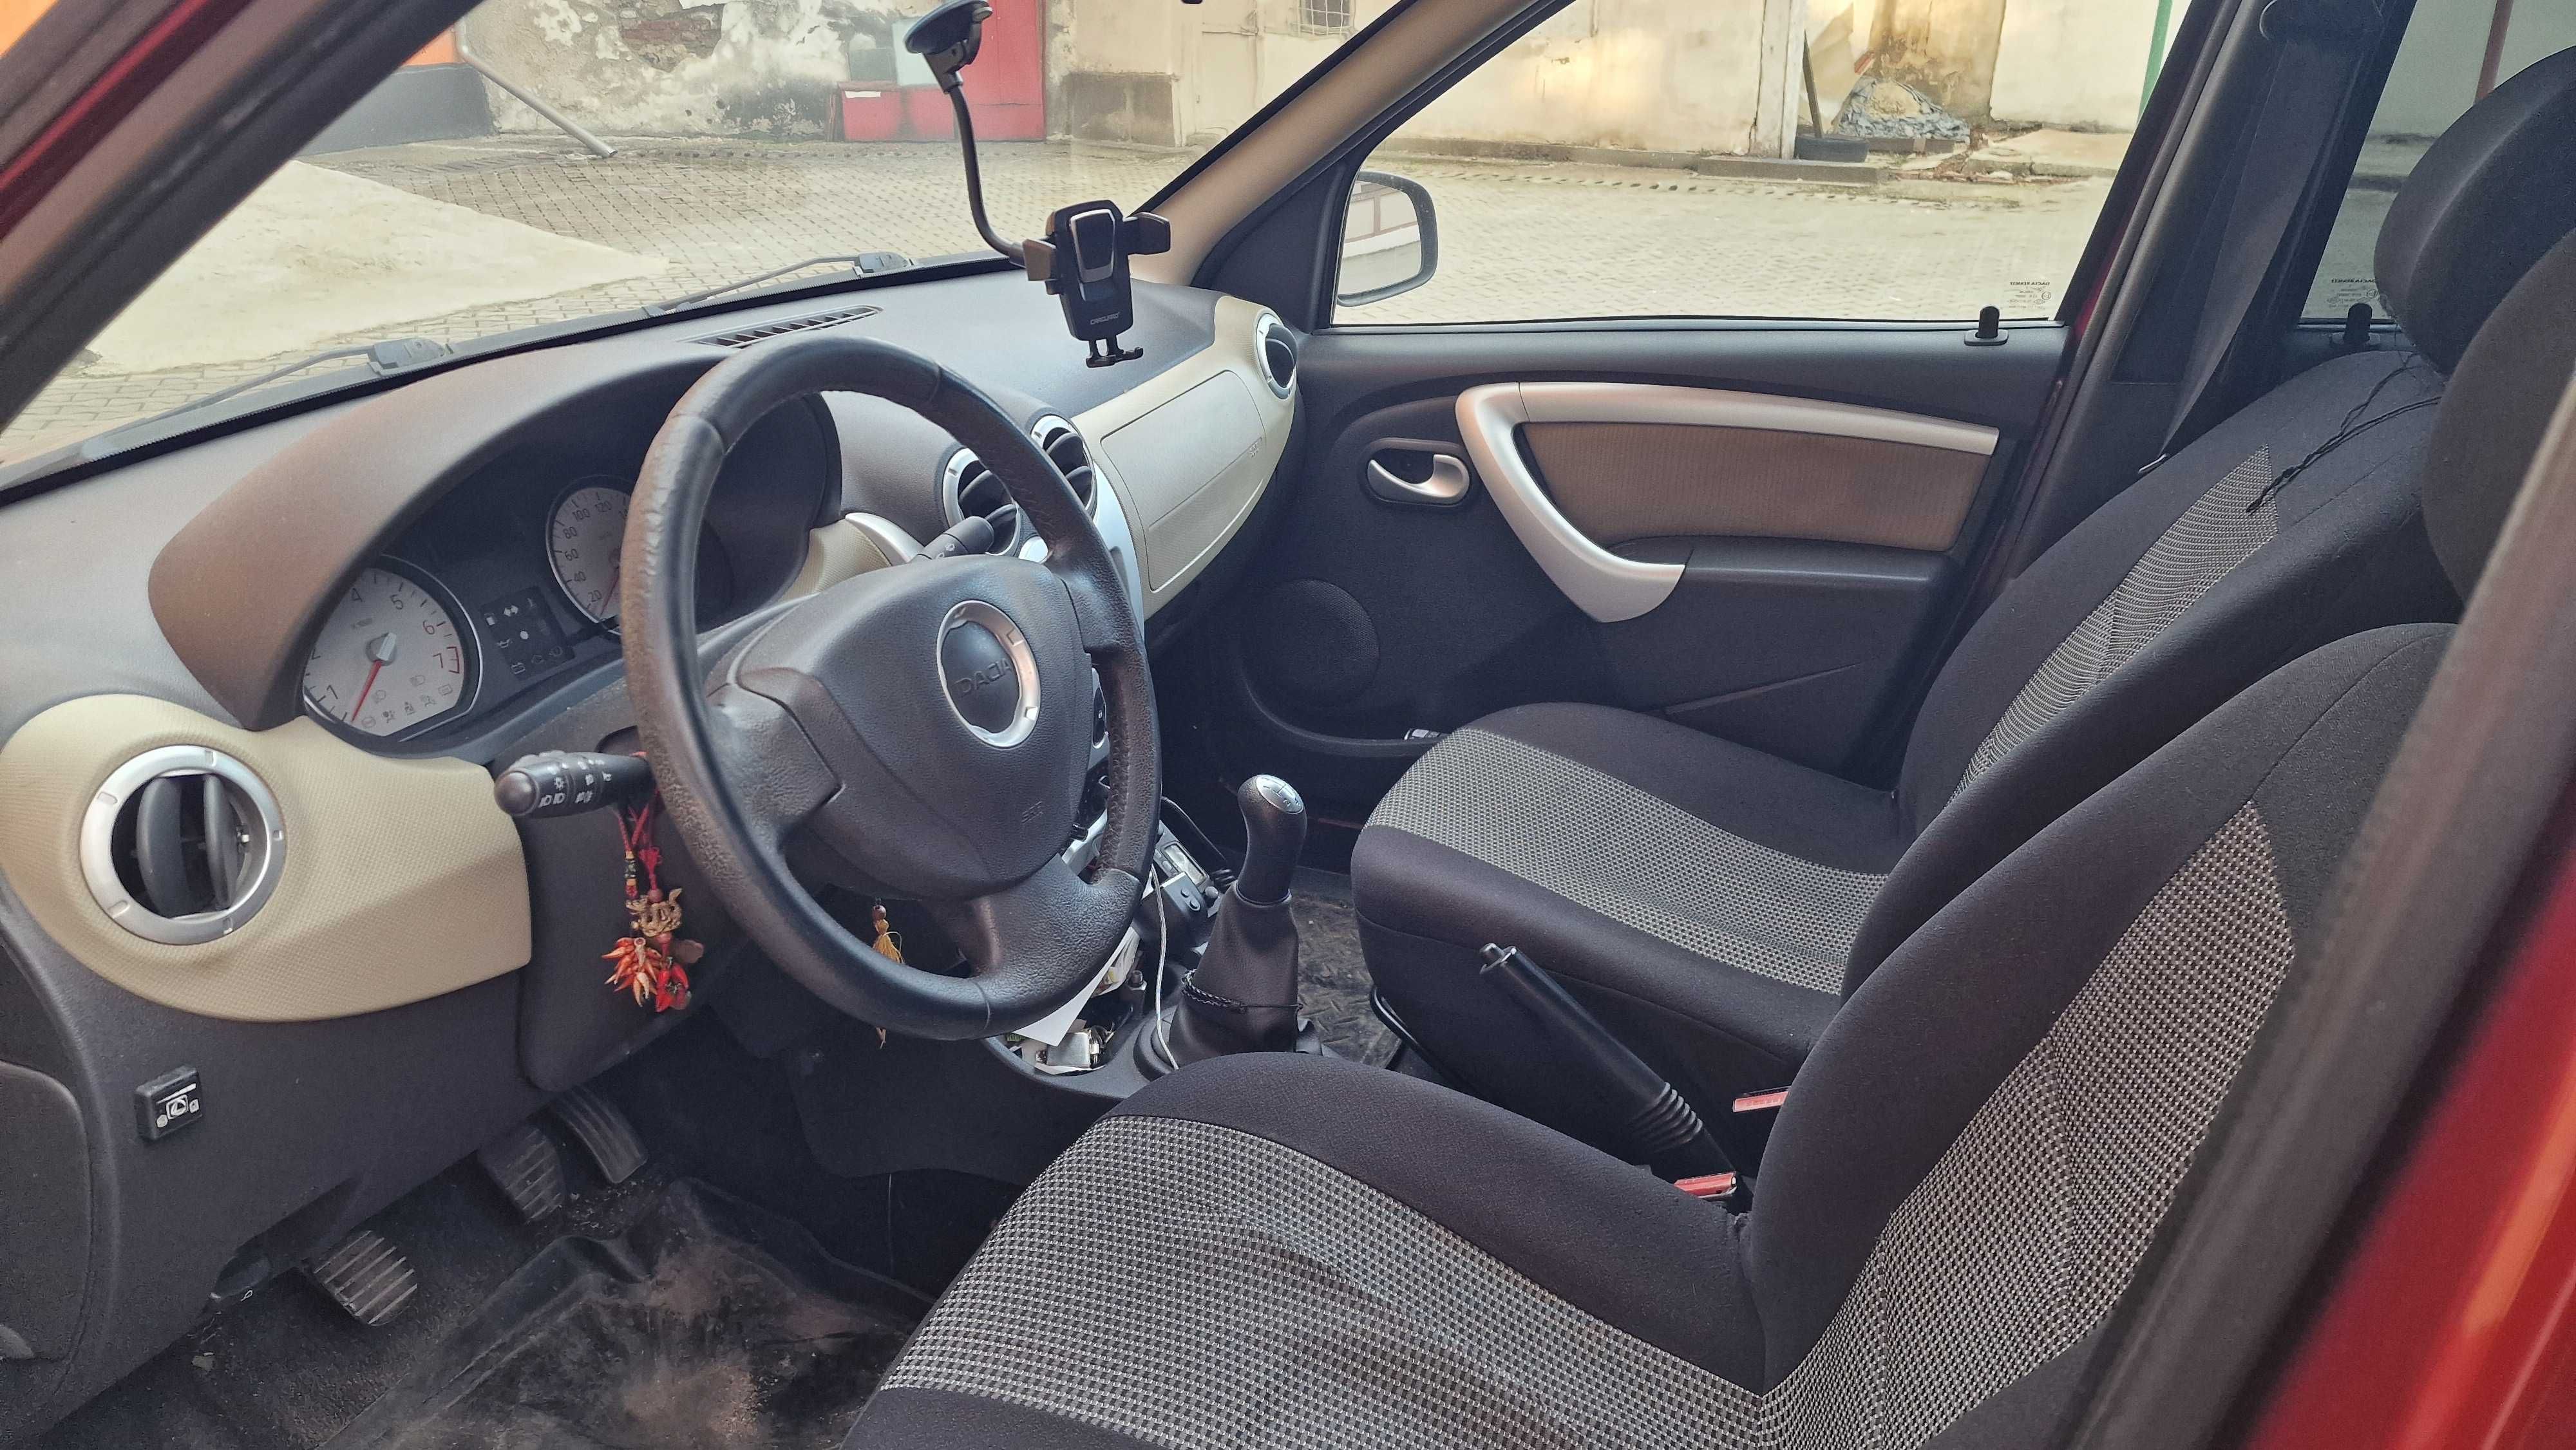 Vând autoturism Dacia Logan 1.6, 16V GPL